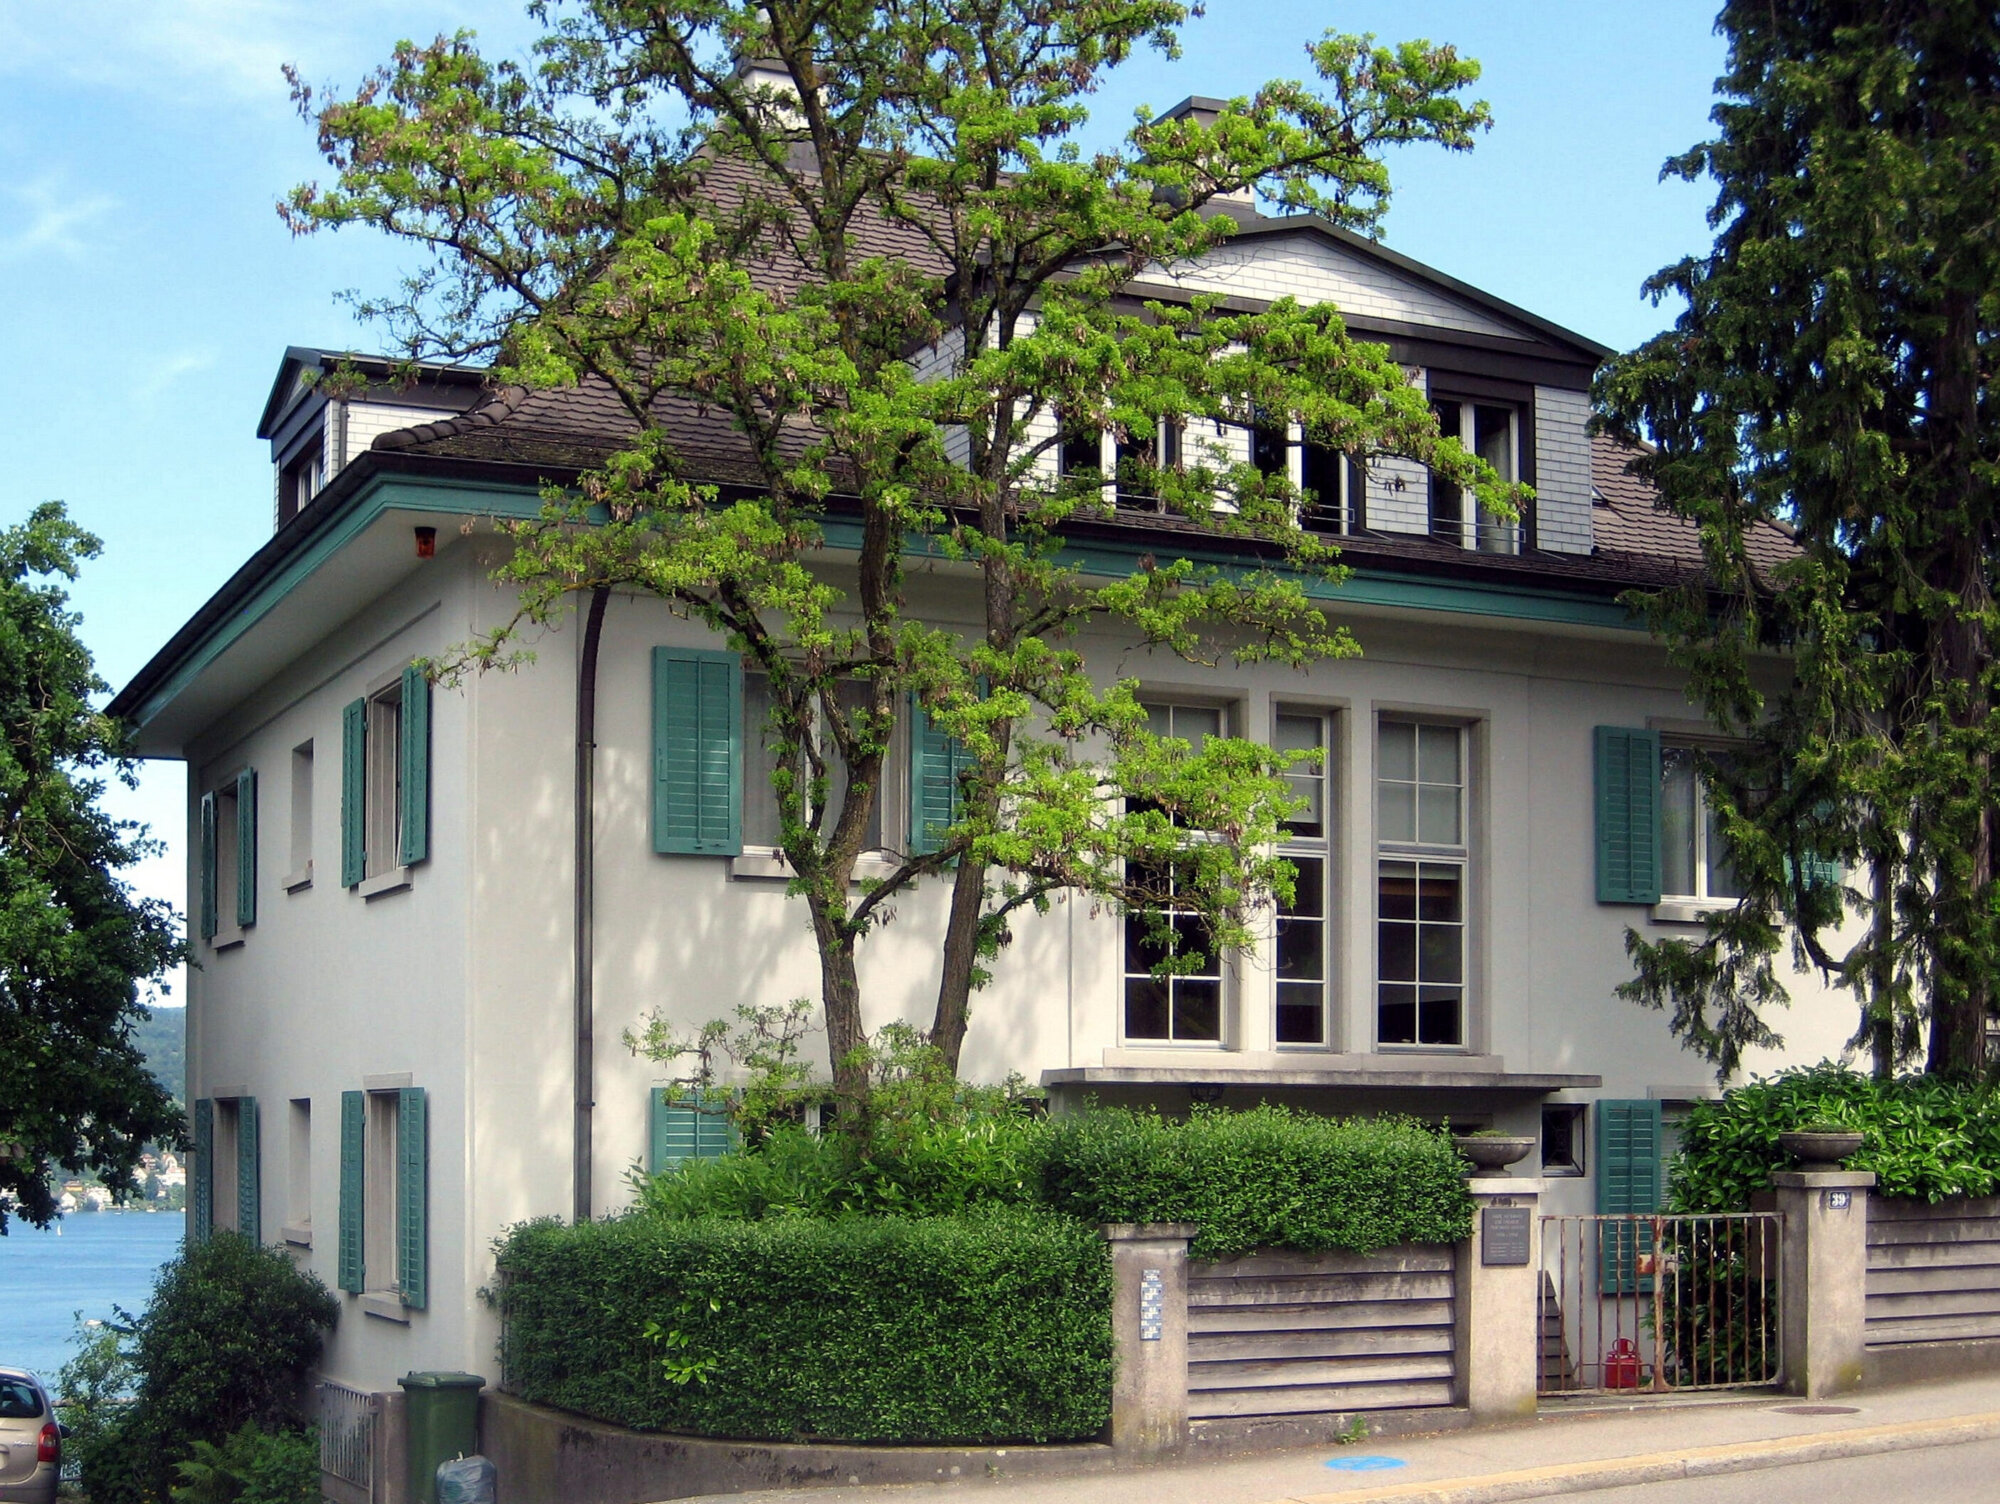 Bäume im Umfeld von Thomas Manns früherem Haus in Kilchberg (Foto: © Regi51, Wikimedia)